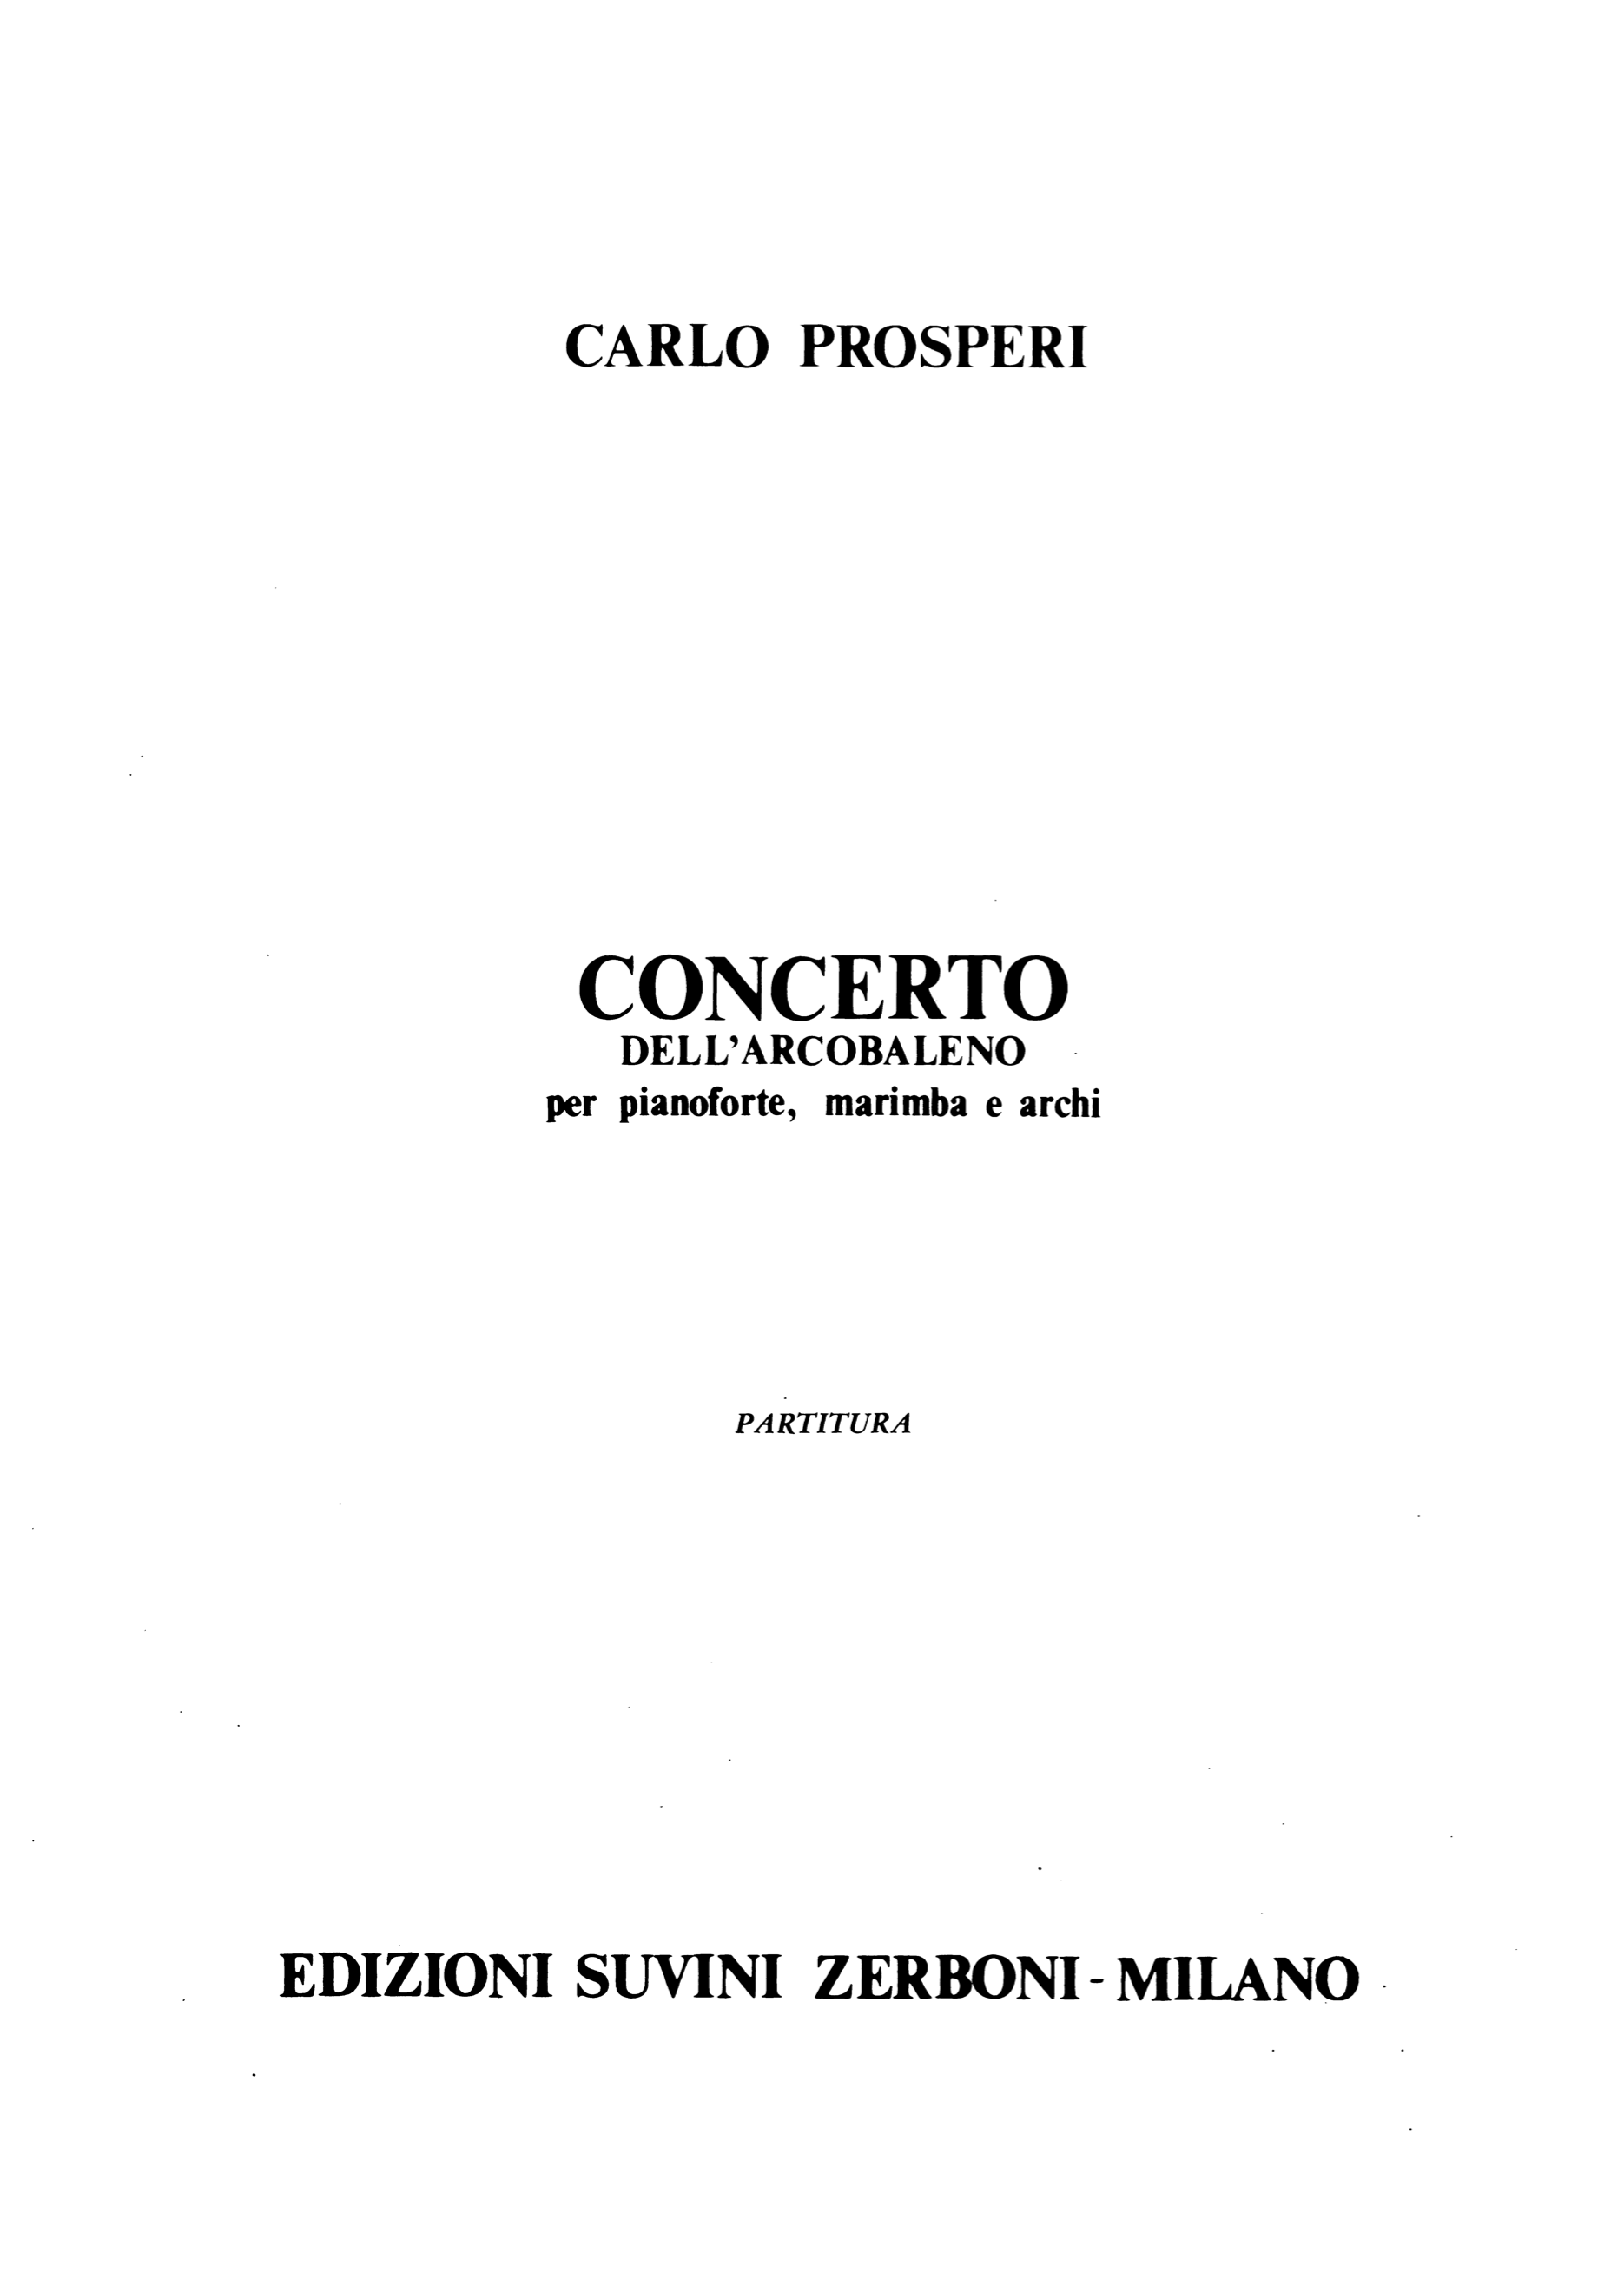 Concerto_Prosperi 1